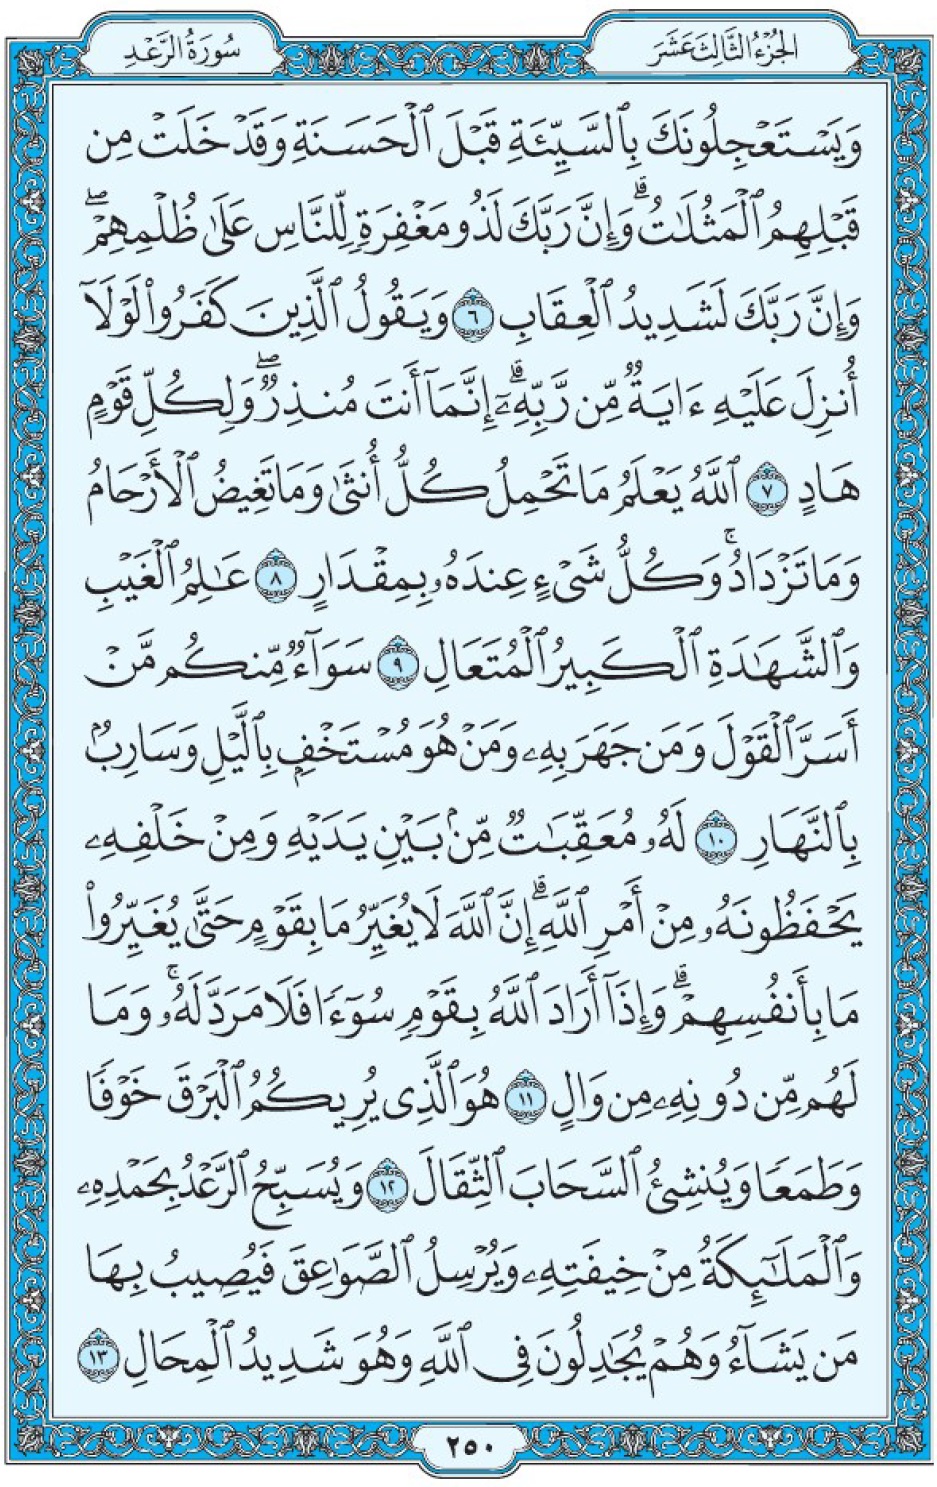 Коран Мединский мусхаф страница 250, Ар-Ра‘д, аят 6-13